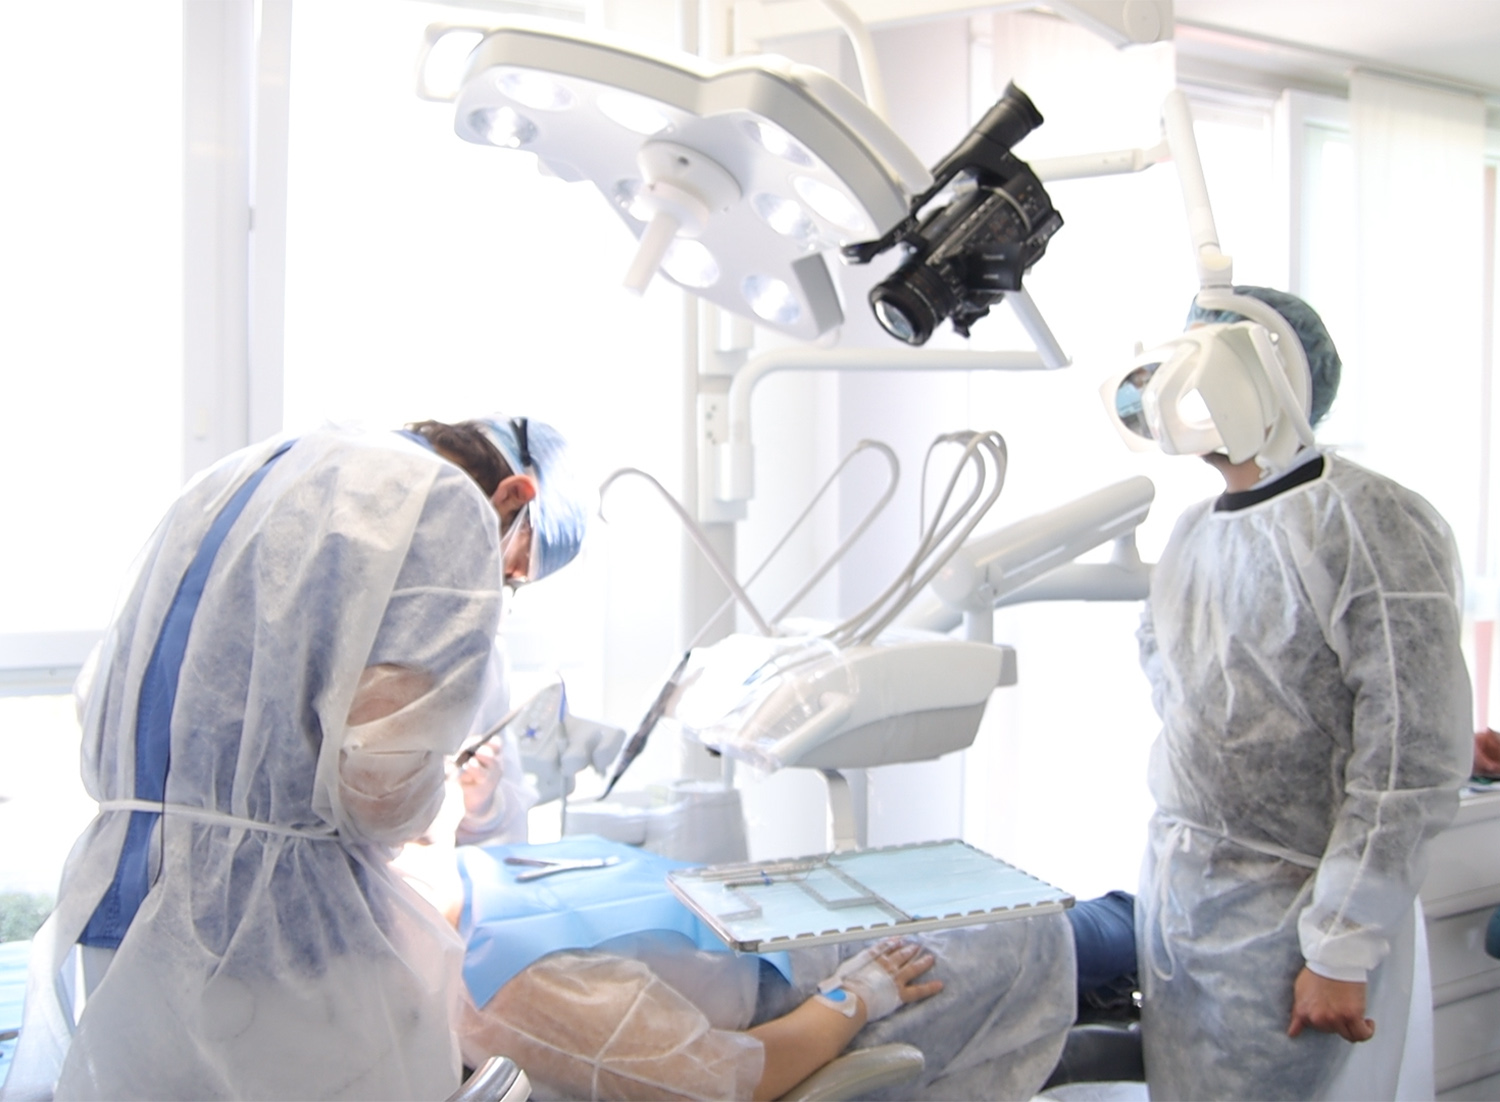 Corso di chirurgia implantare su paziente